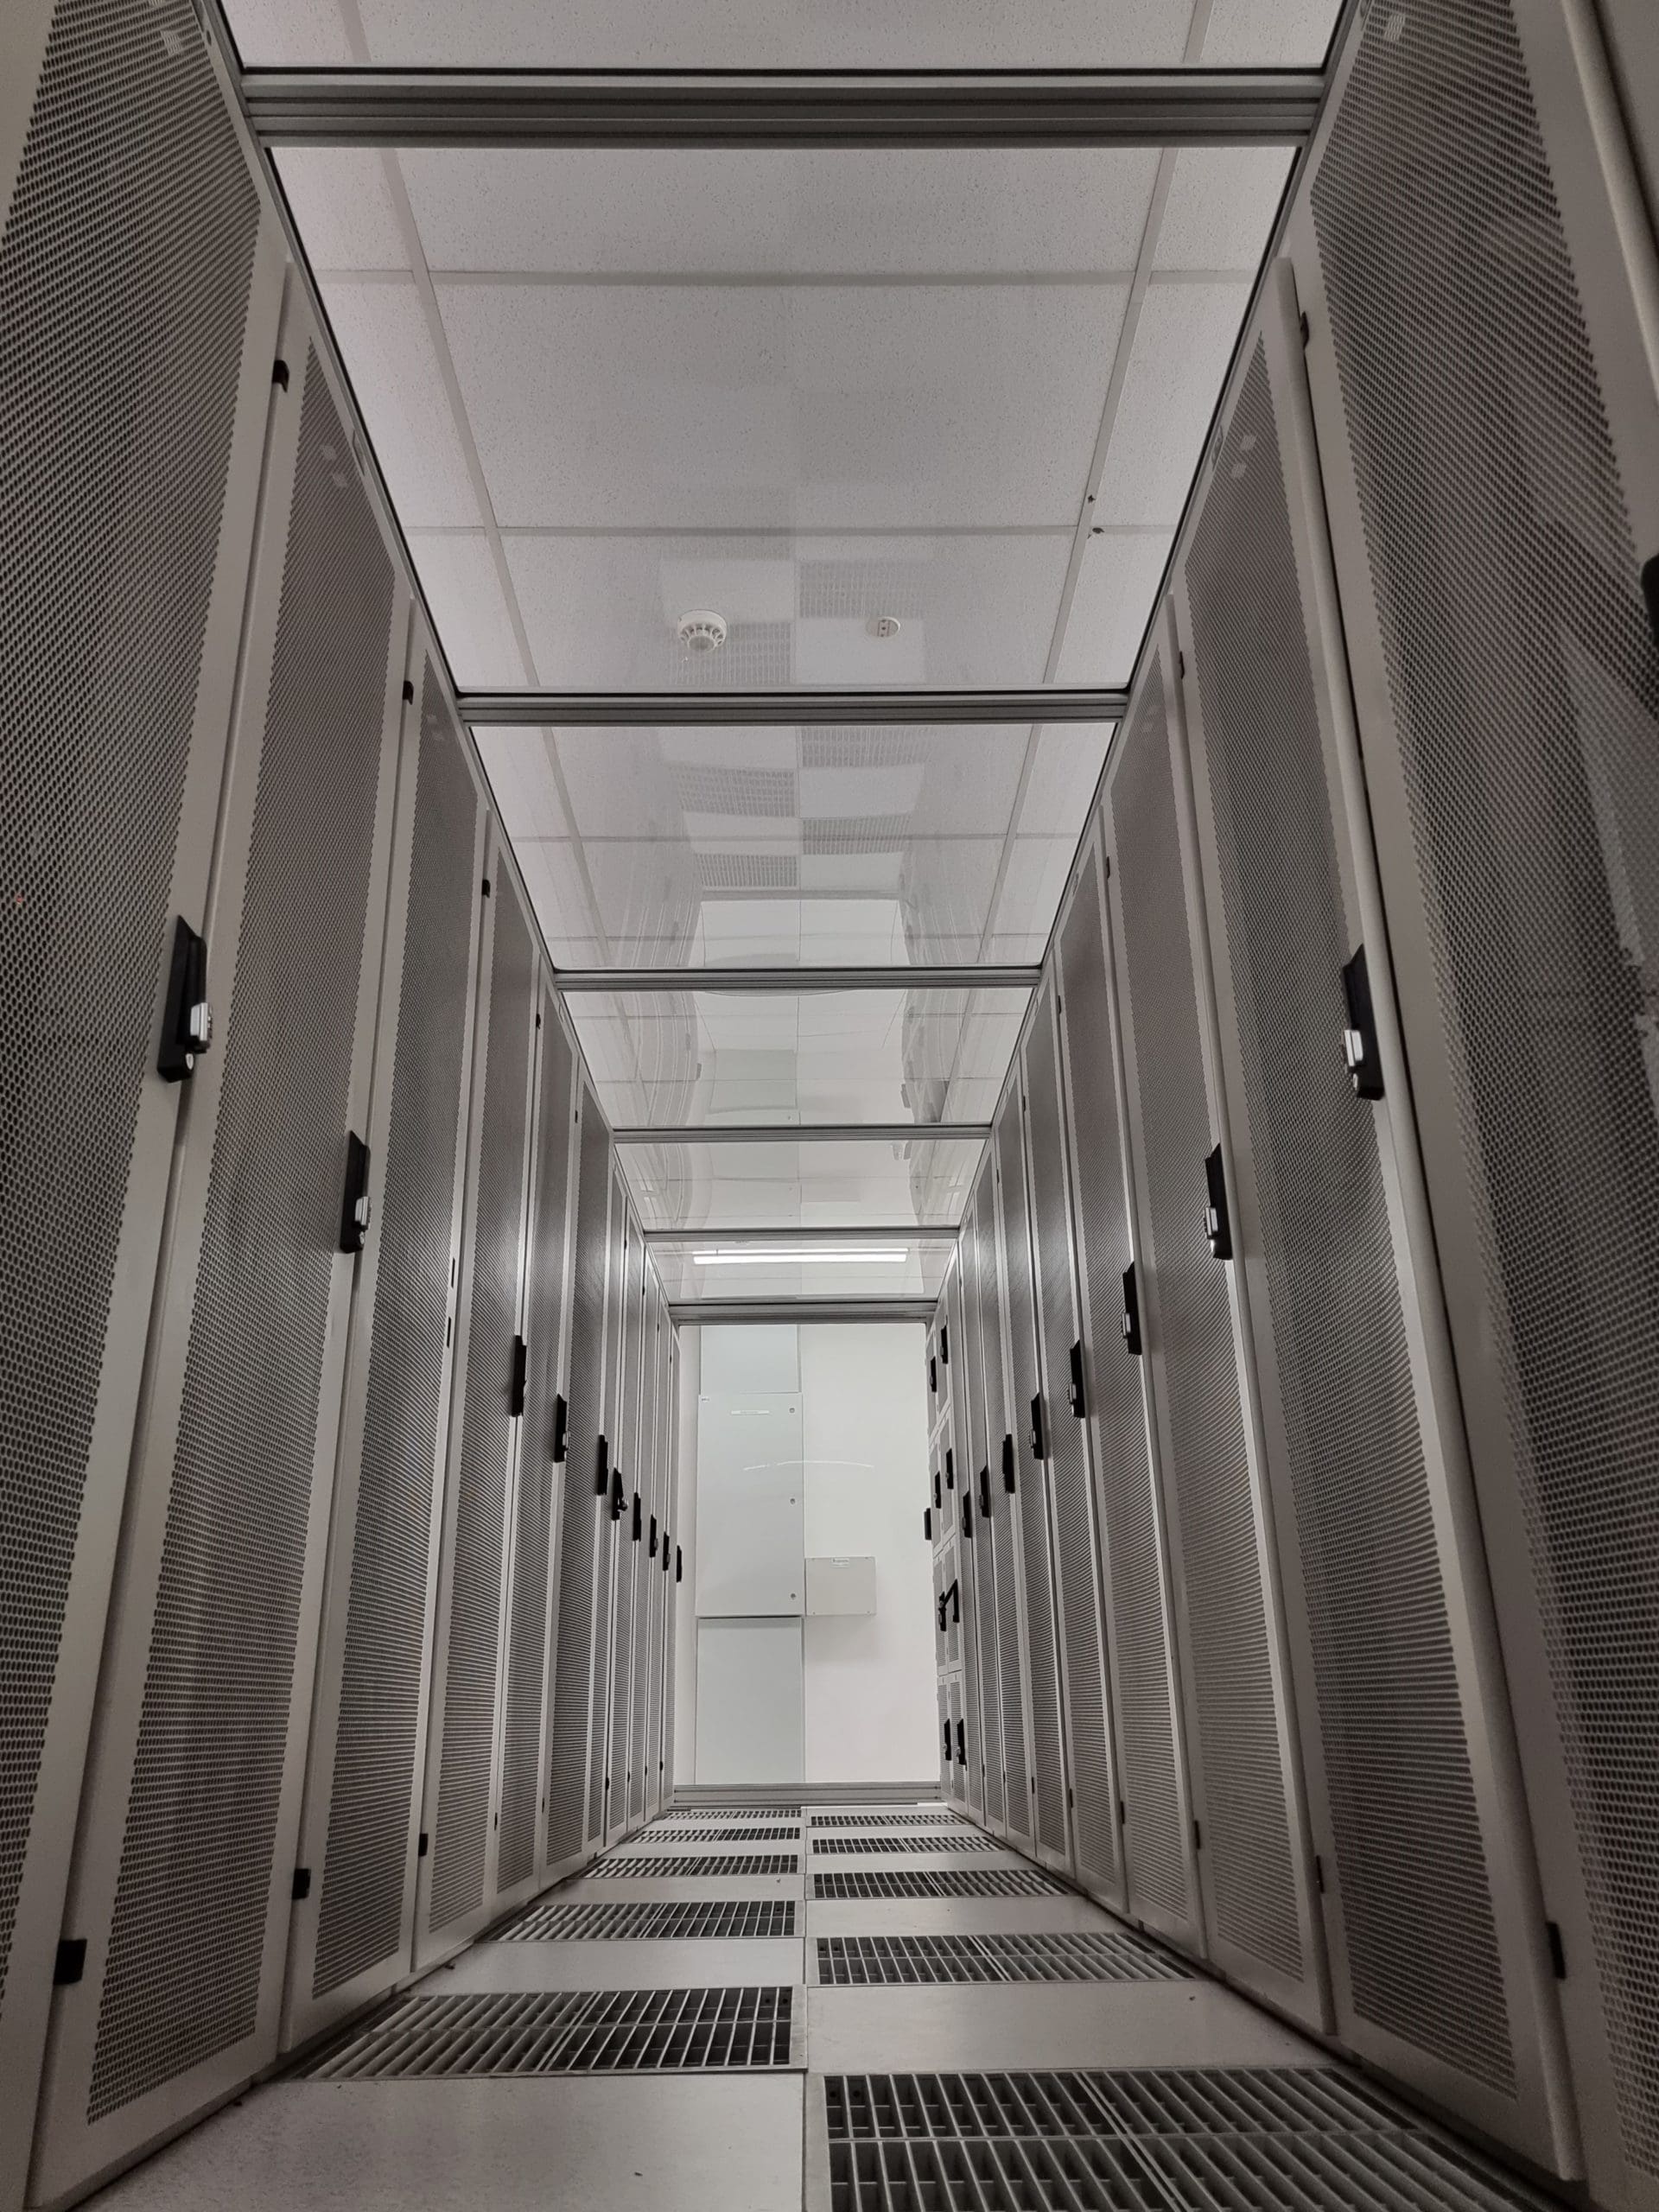 data centre floor tiles